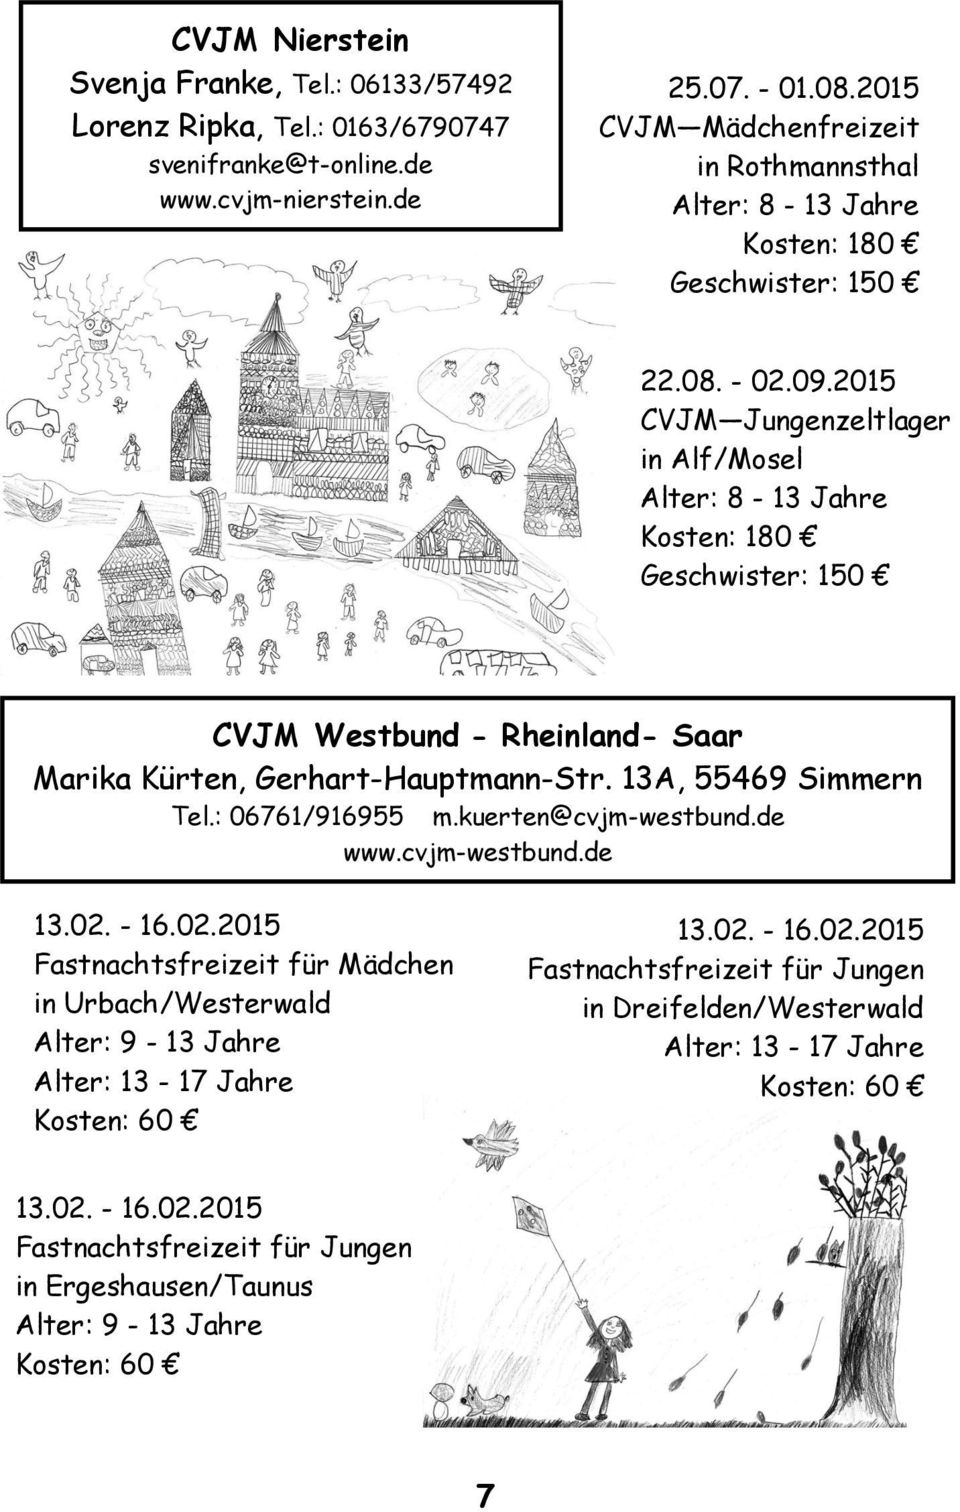 2015 CVJM Jungenzeltlager in Alf/Mosel Alter: 8-13 Jahre Kosten: 180 Geschwister: 150 CVJM Westbund - Rheinland- Saar Marika Kürten, Gerhart-Hauptmann-Str. 13A, 55469 Simmern Tel.: 06761/916955 m.